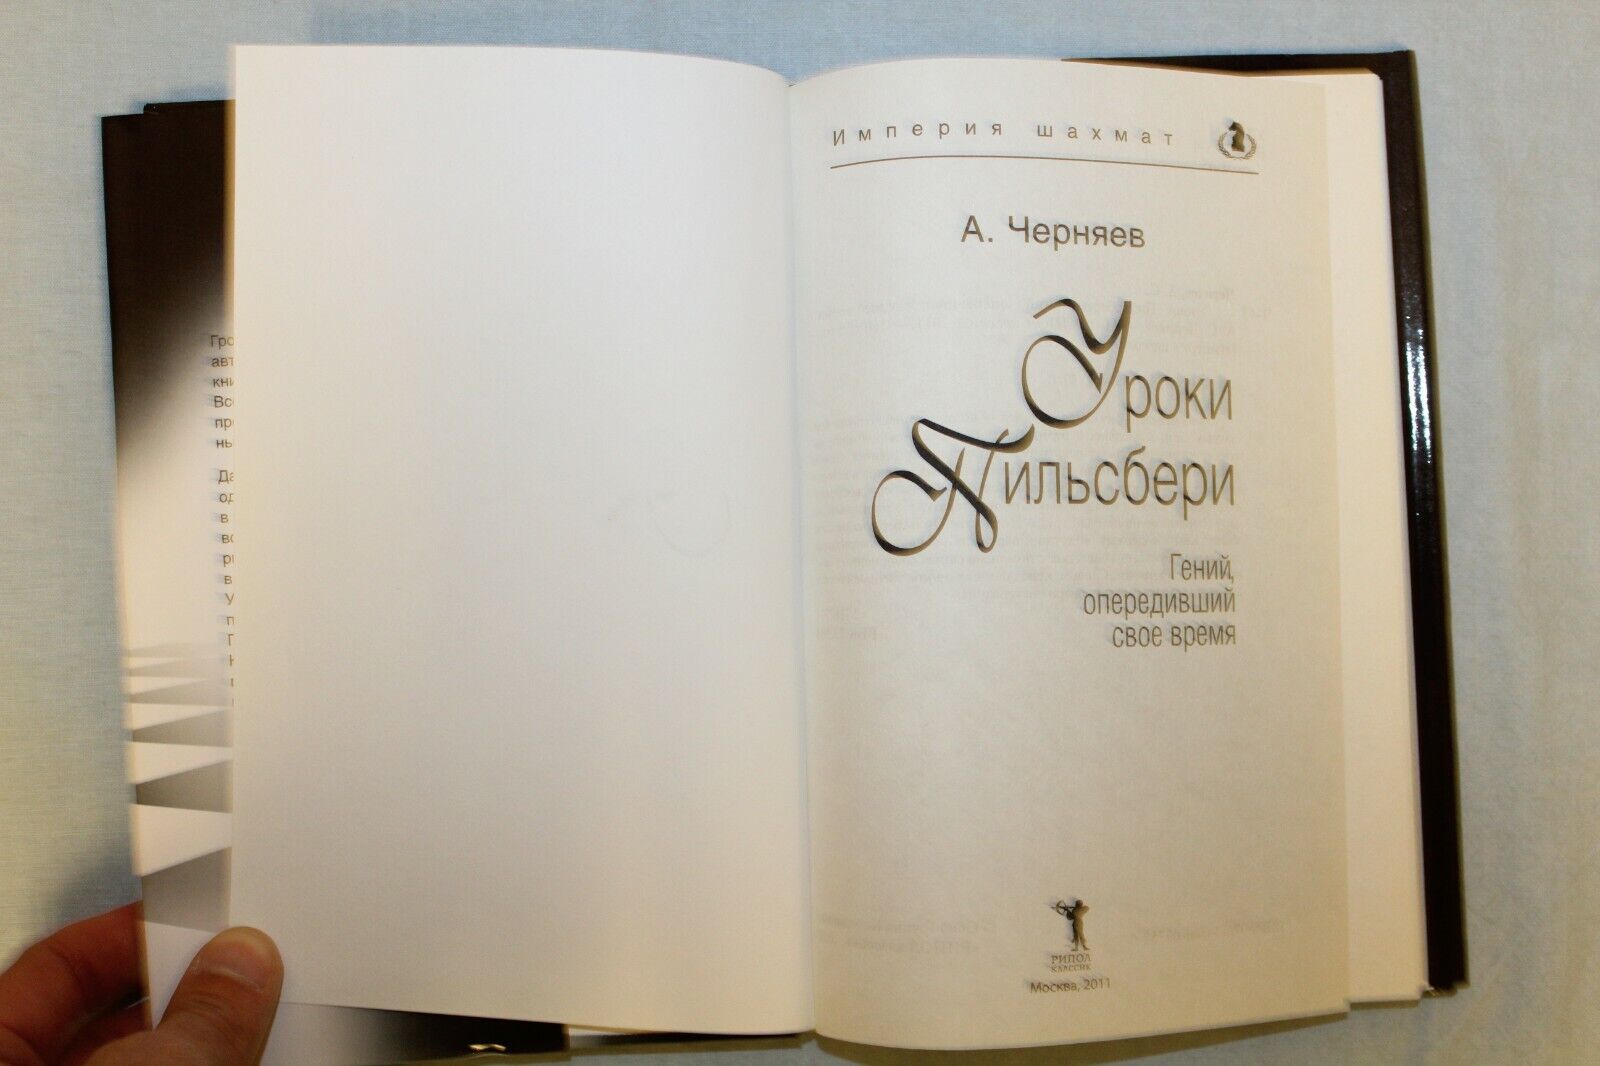 10717.3 Russian Books: History of Chess, Pillsbury's Lessons, Rubinstein's School